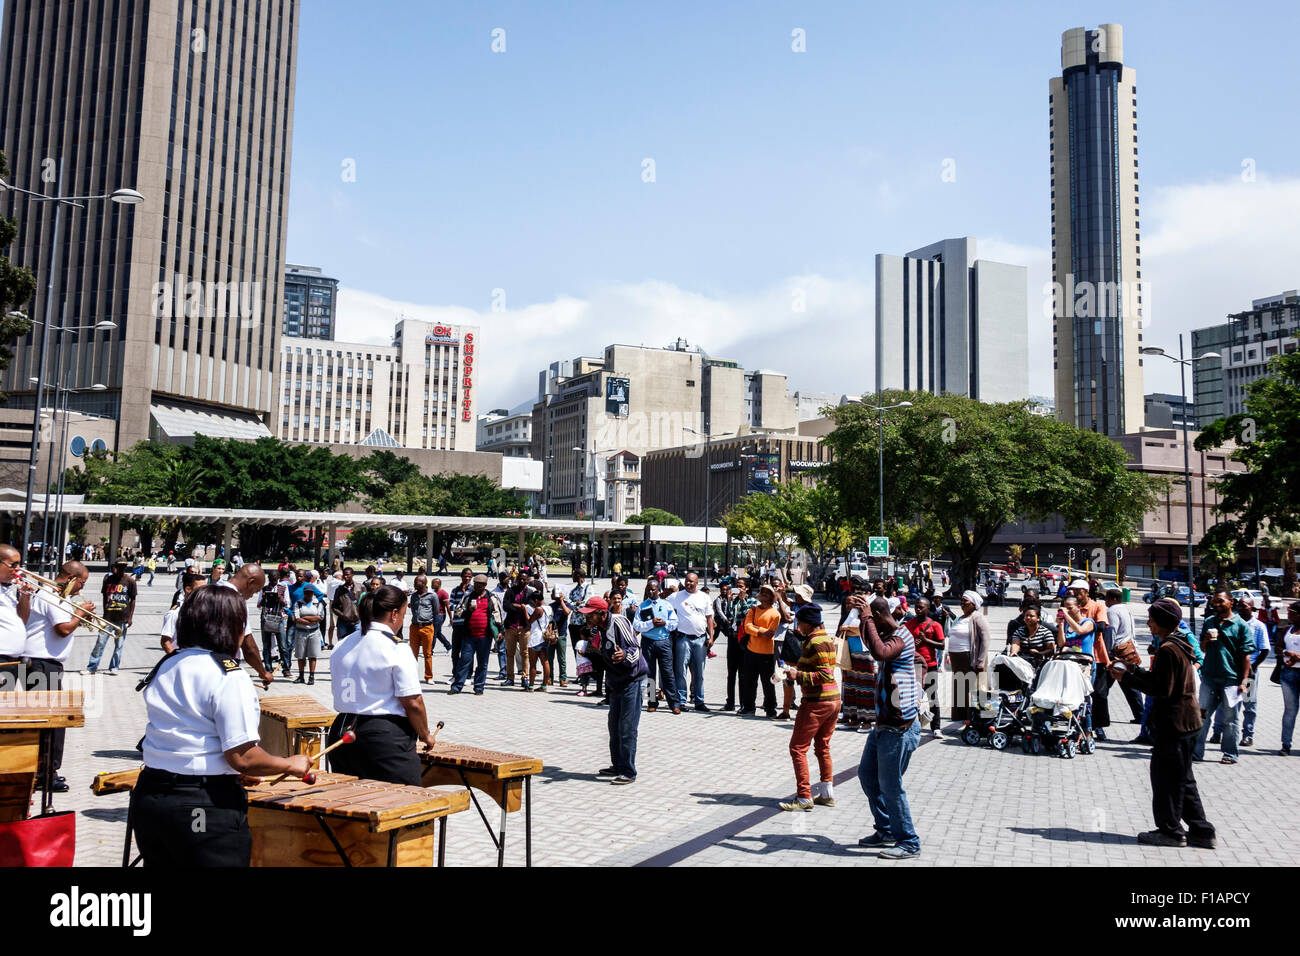 Kapstadt Südafrika, Afrika, Stadtzentrum, Zentrum, Adderley Street, Navy Band, Musiker, spielen, kostenlose Konzertaufführung, Skyline der Innenstadt, Gebäude, abtrennen Stockfoto